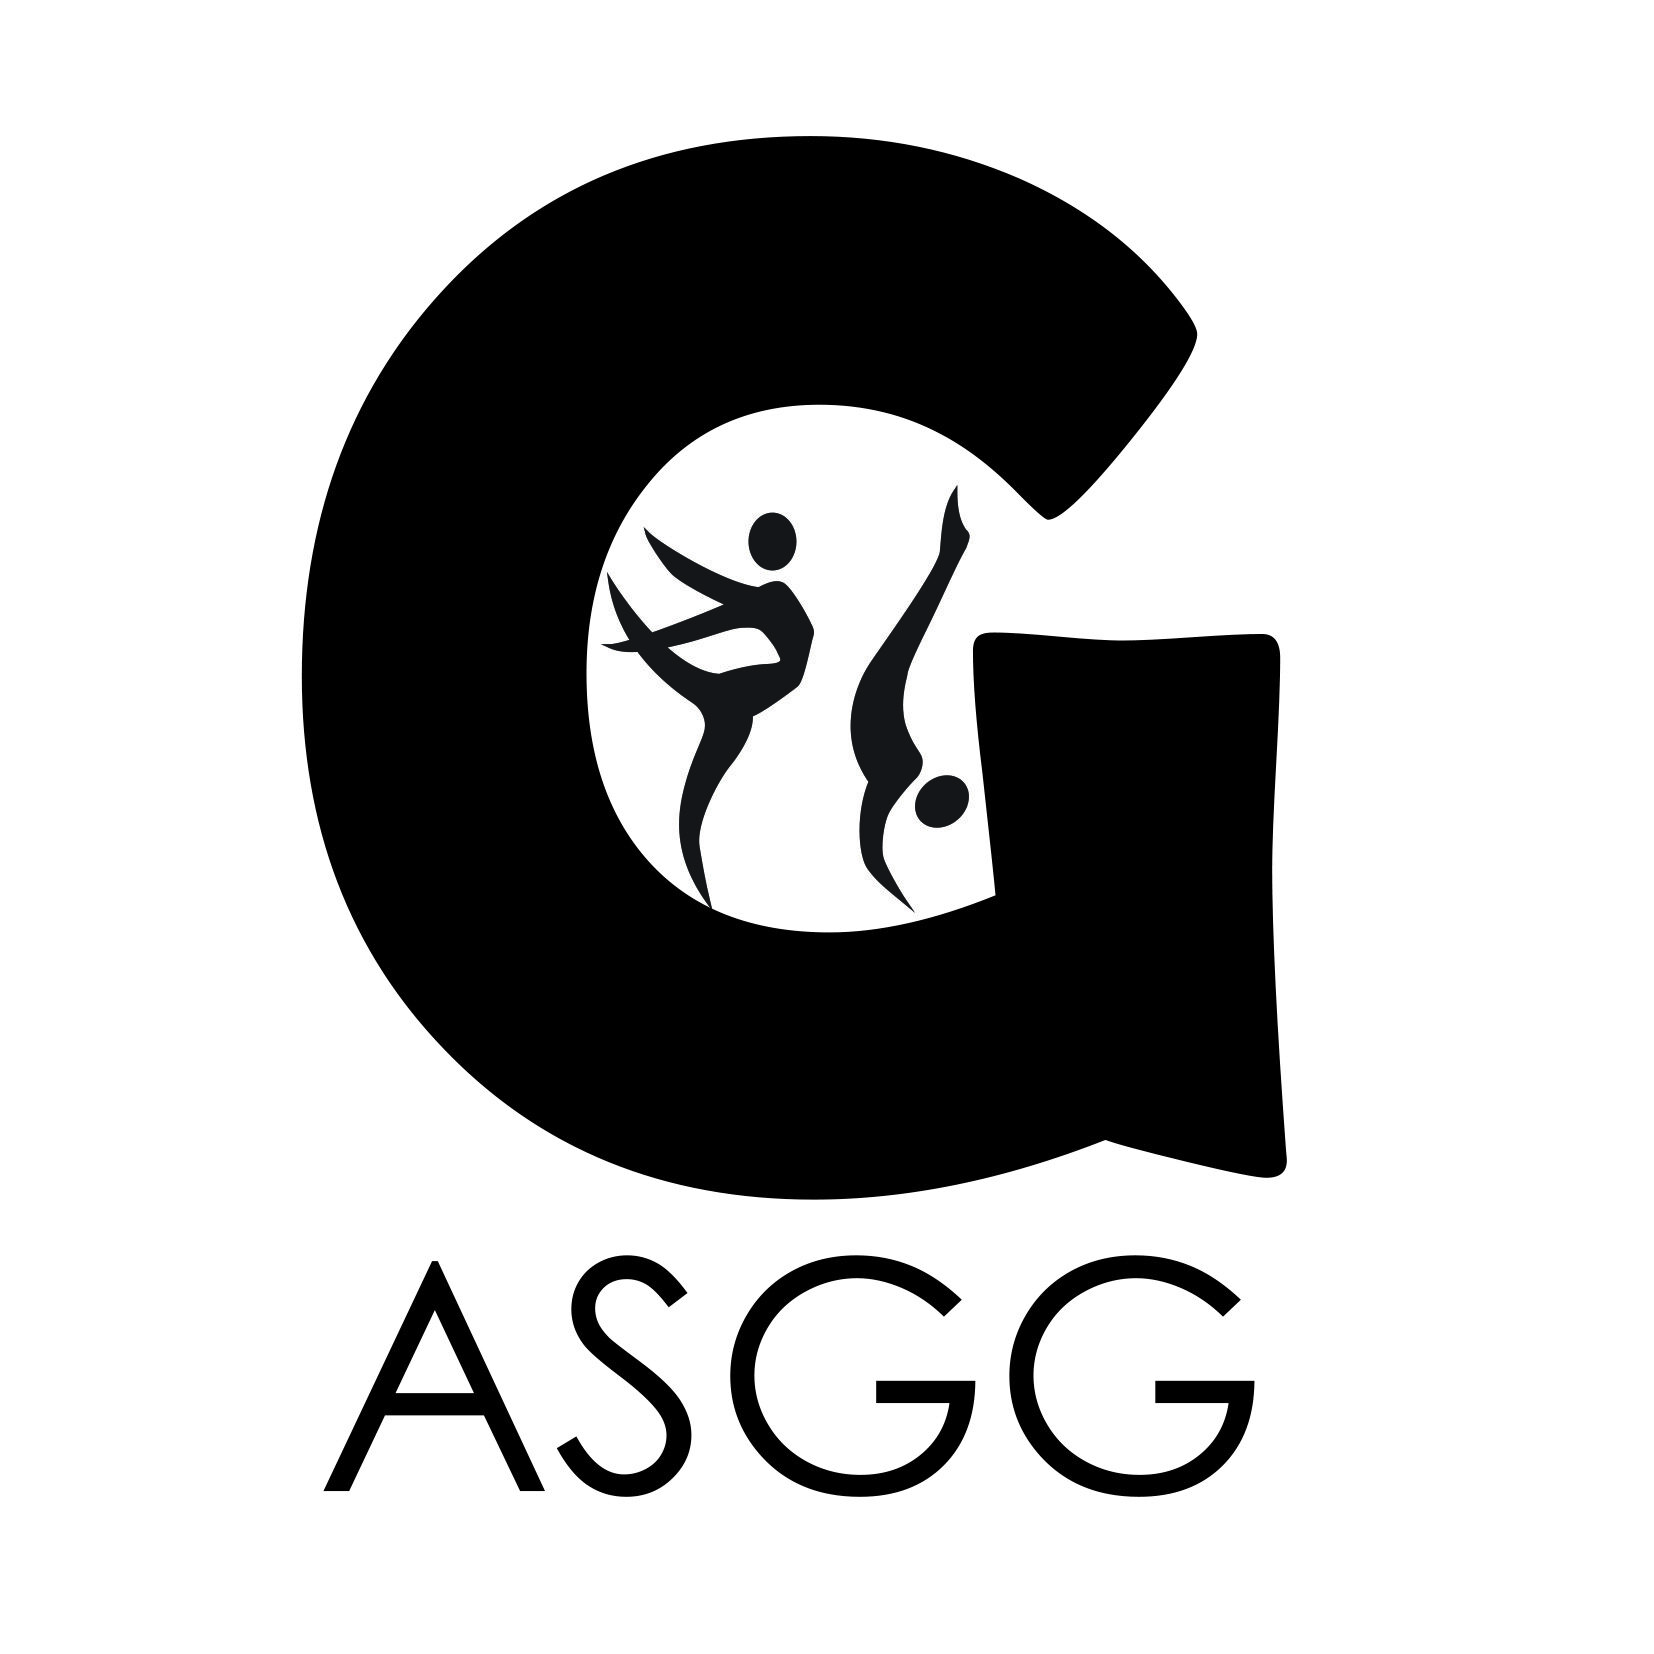 ASGG - Association Sportive et Gymnique de Gonesse